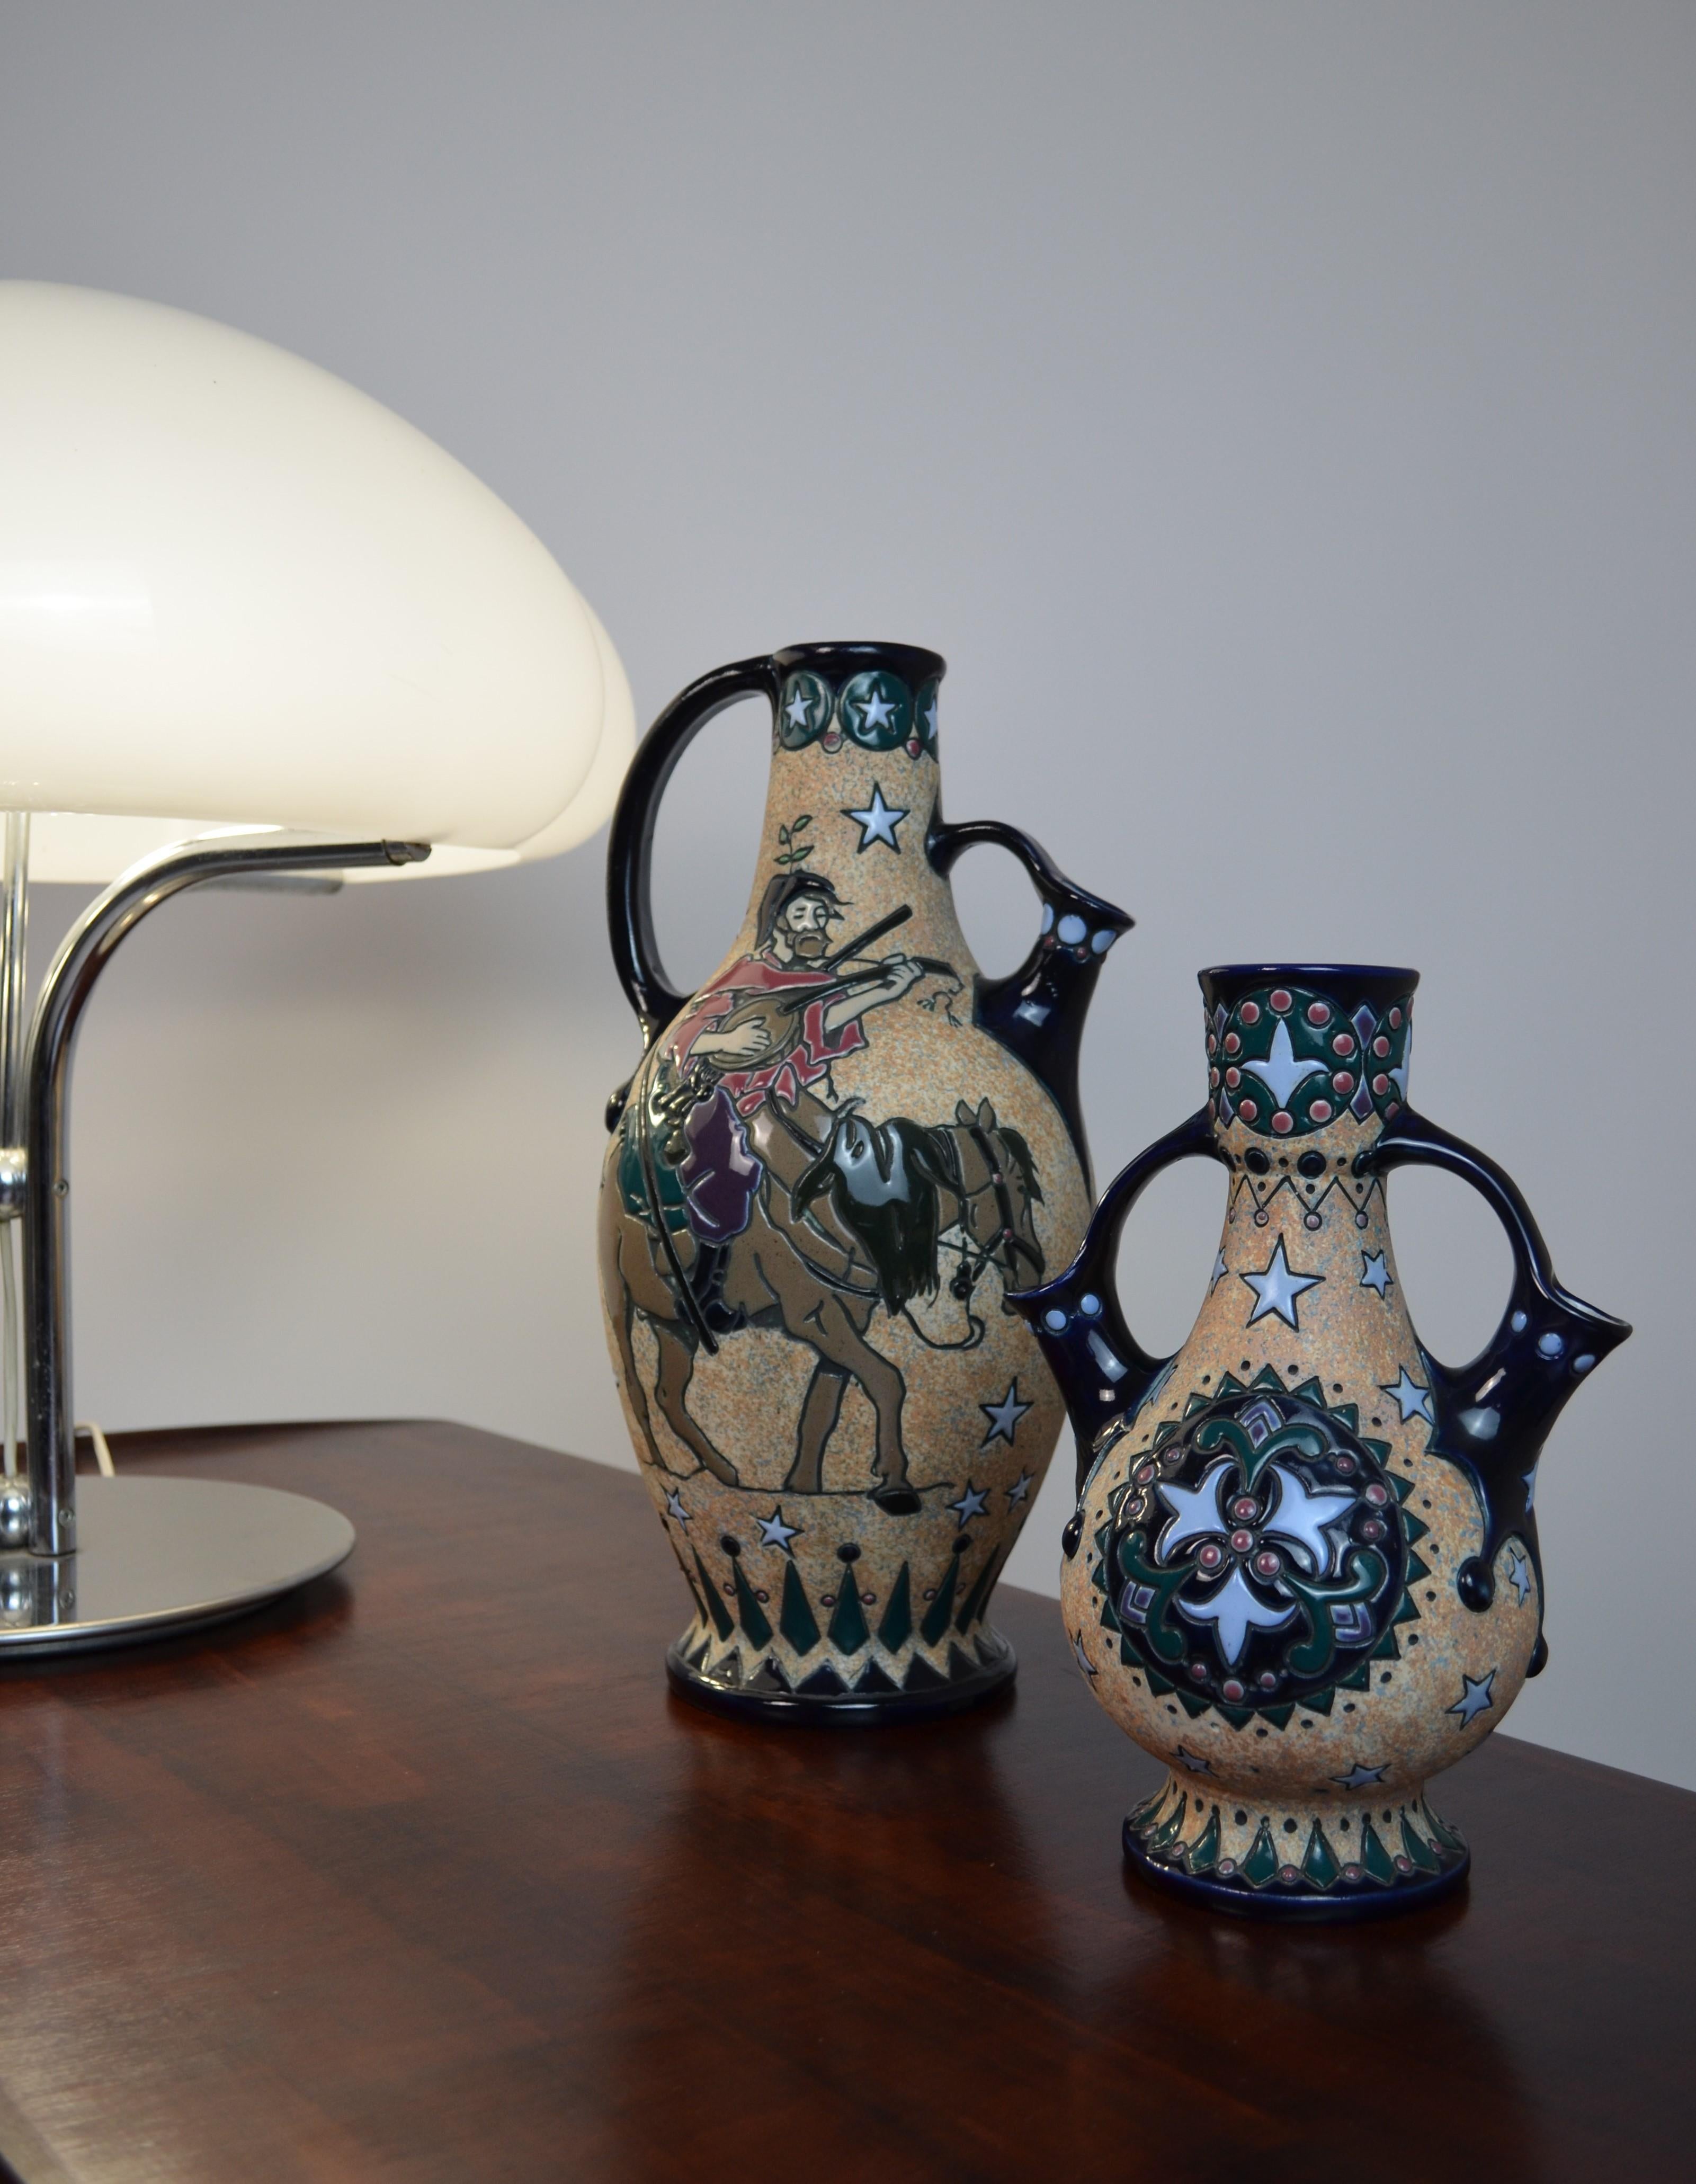 Paire de vases en céramique émaillée tchécoslovaque de la marque Amphora, années 20
Style Art déco
Rare et spectaculaire
Le plus grand porte la marque du fabricant sur le fond.
Hauteur : 37 et 25 cm
Diamètre : 16 et 13 cm